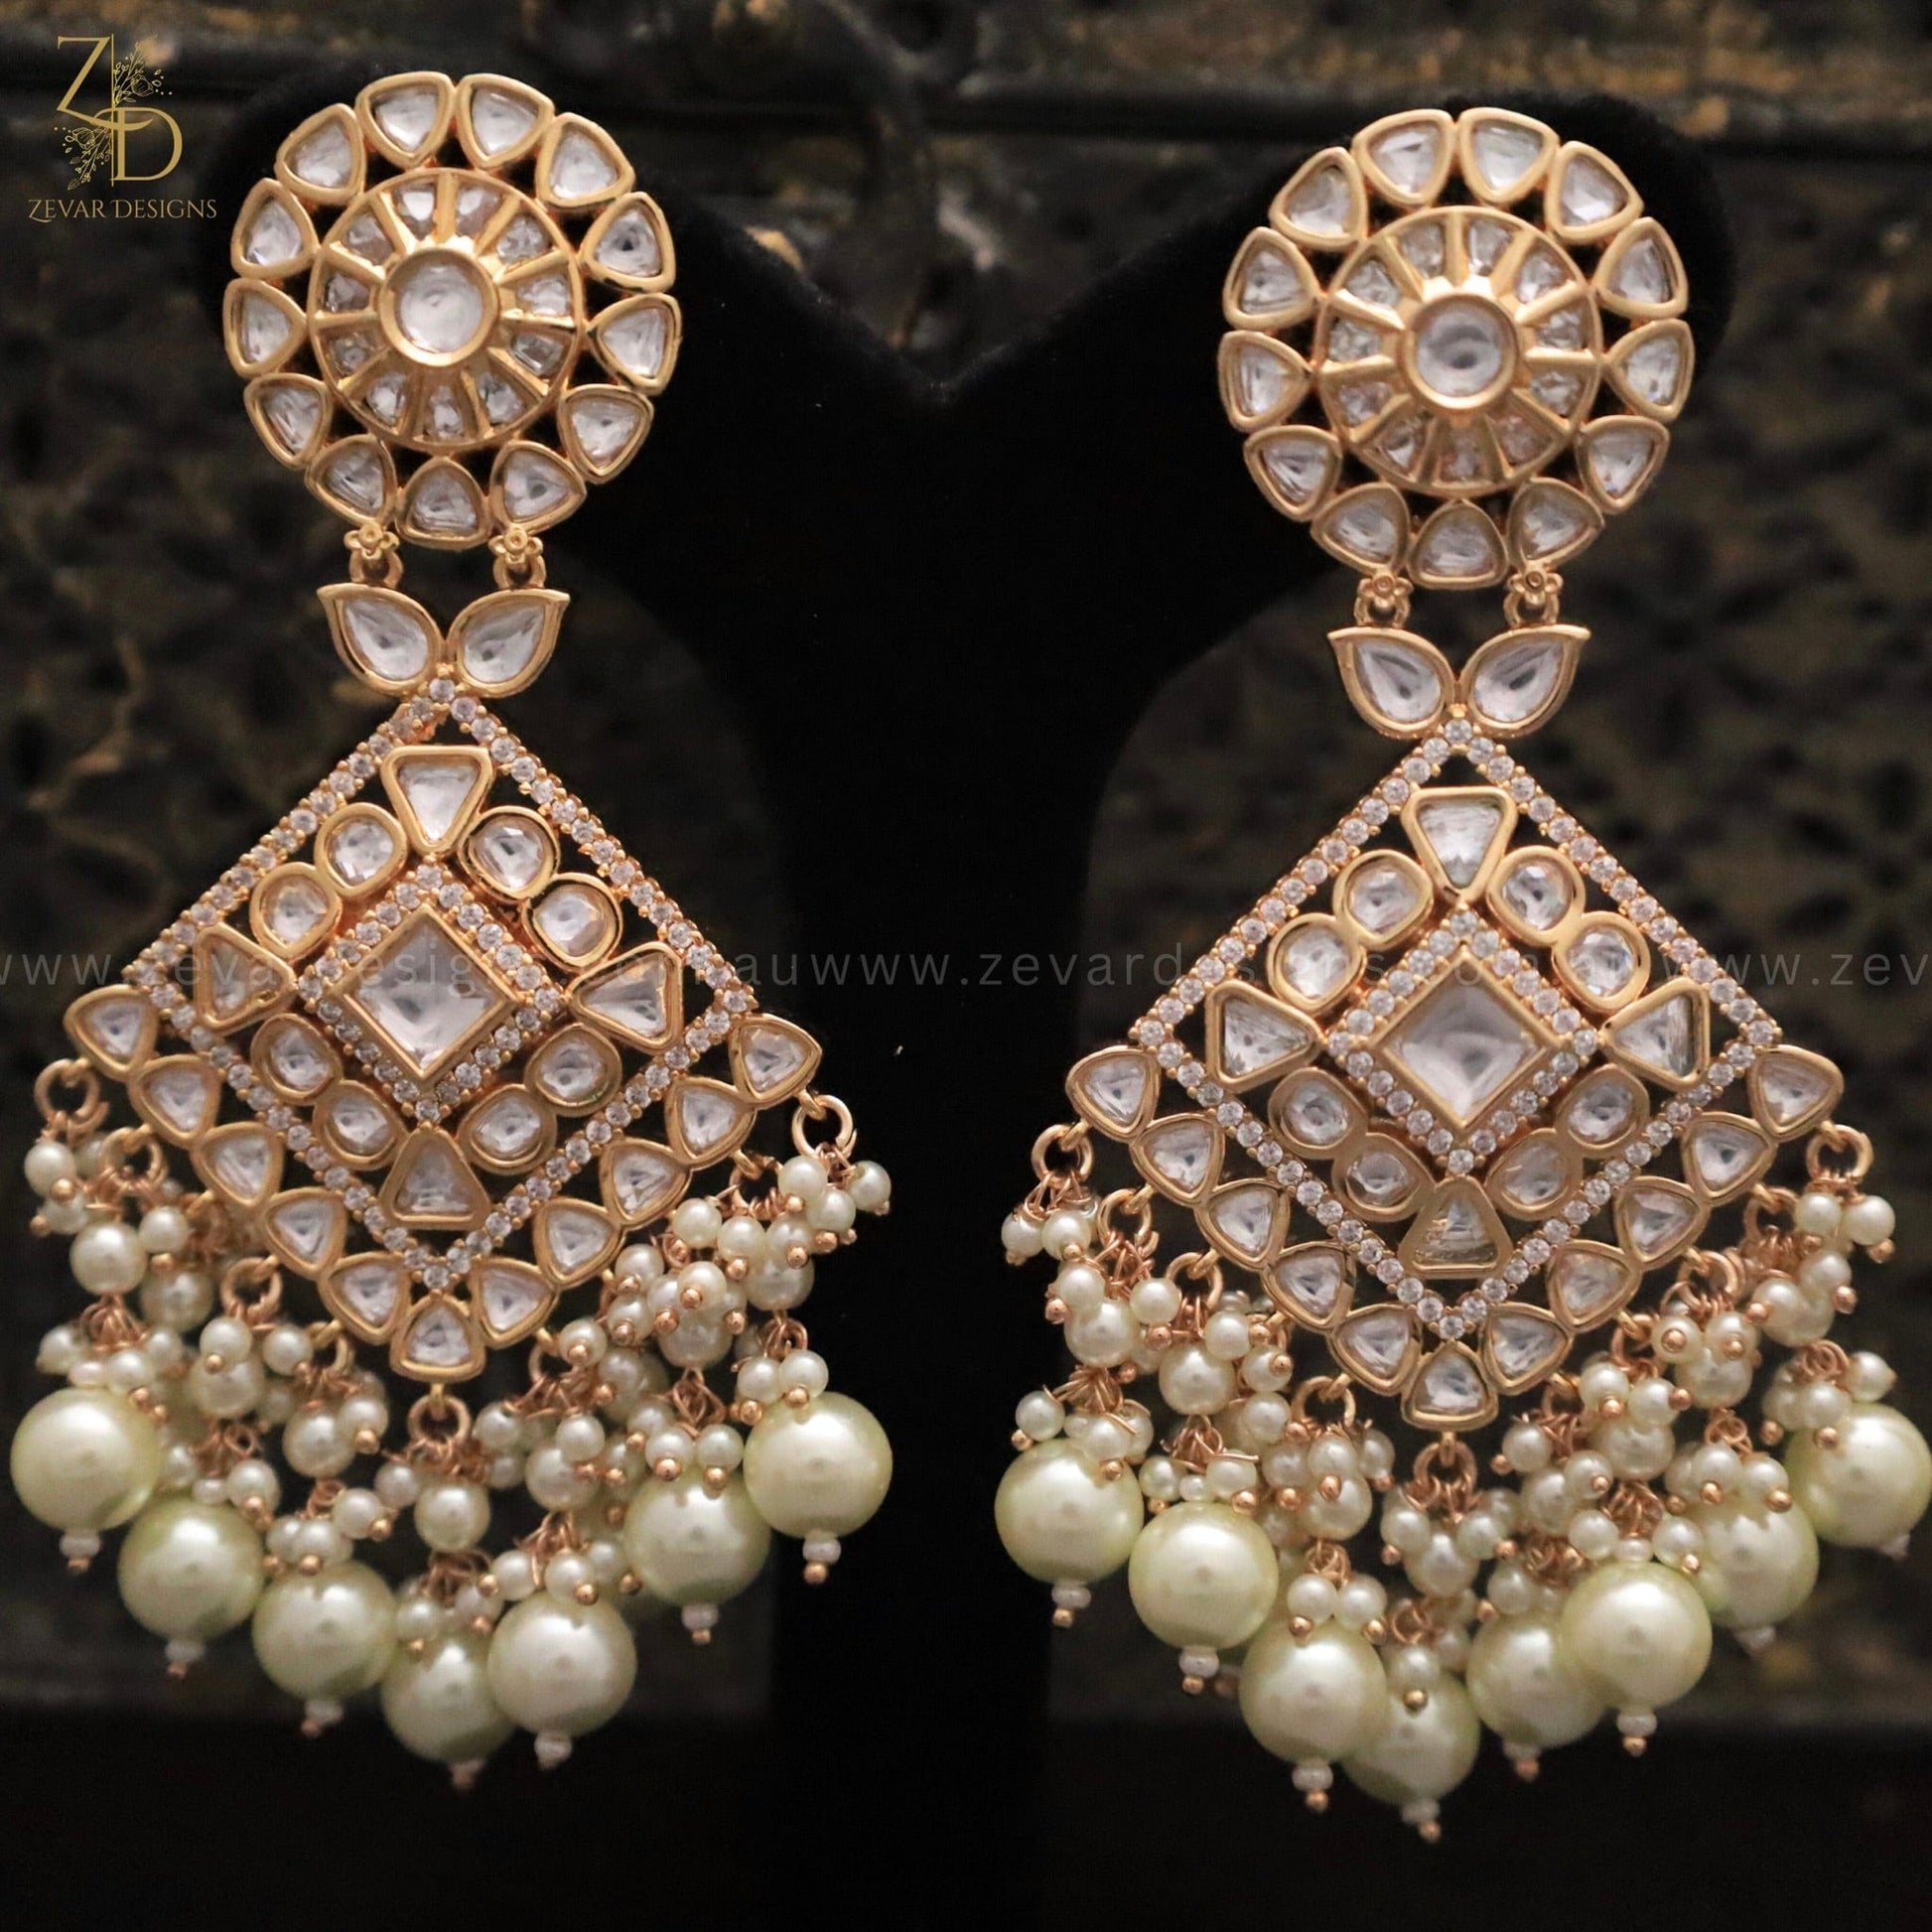 Zevar Designs Designer Earrings Polki Earrings in Pearls